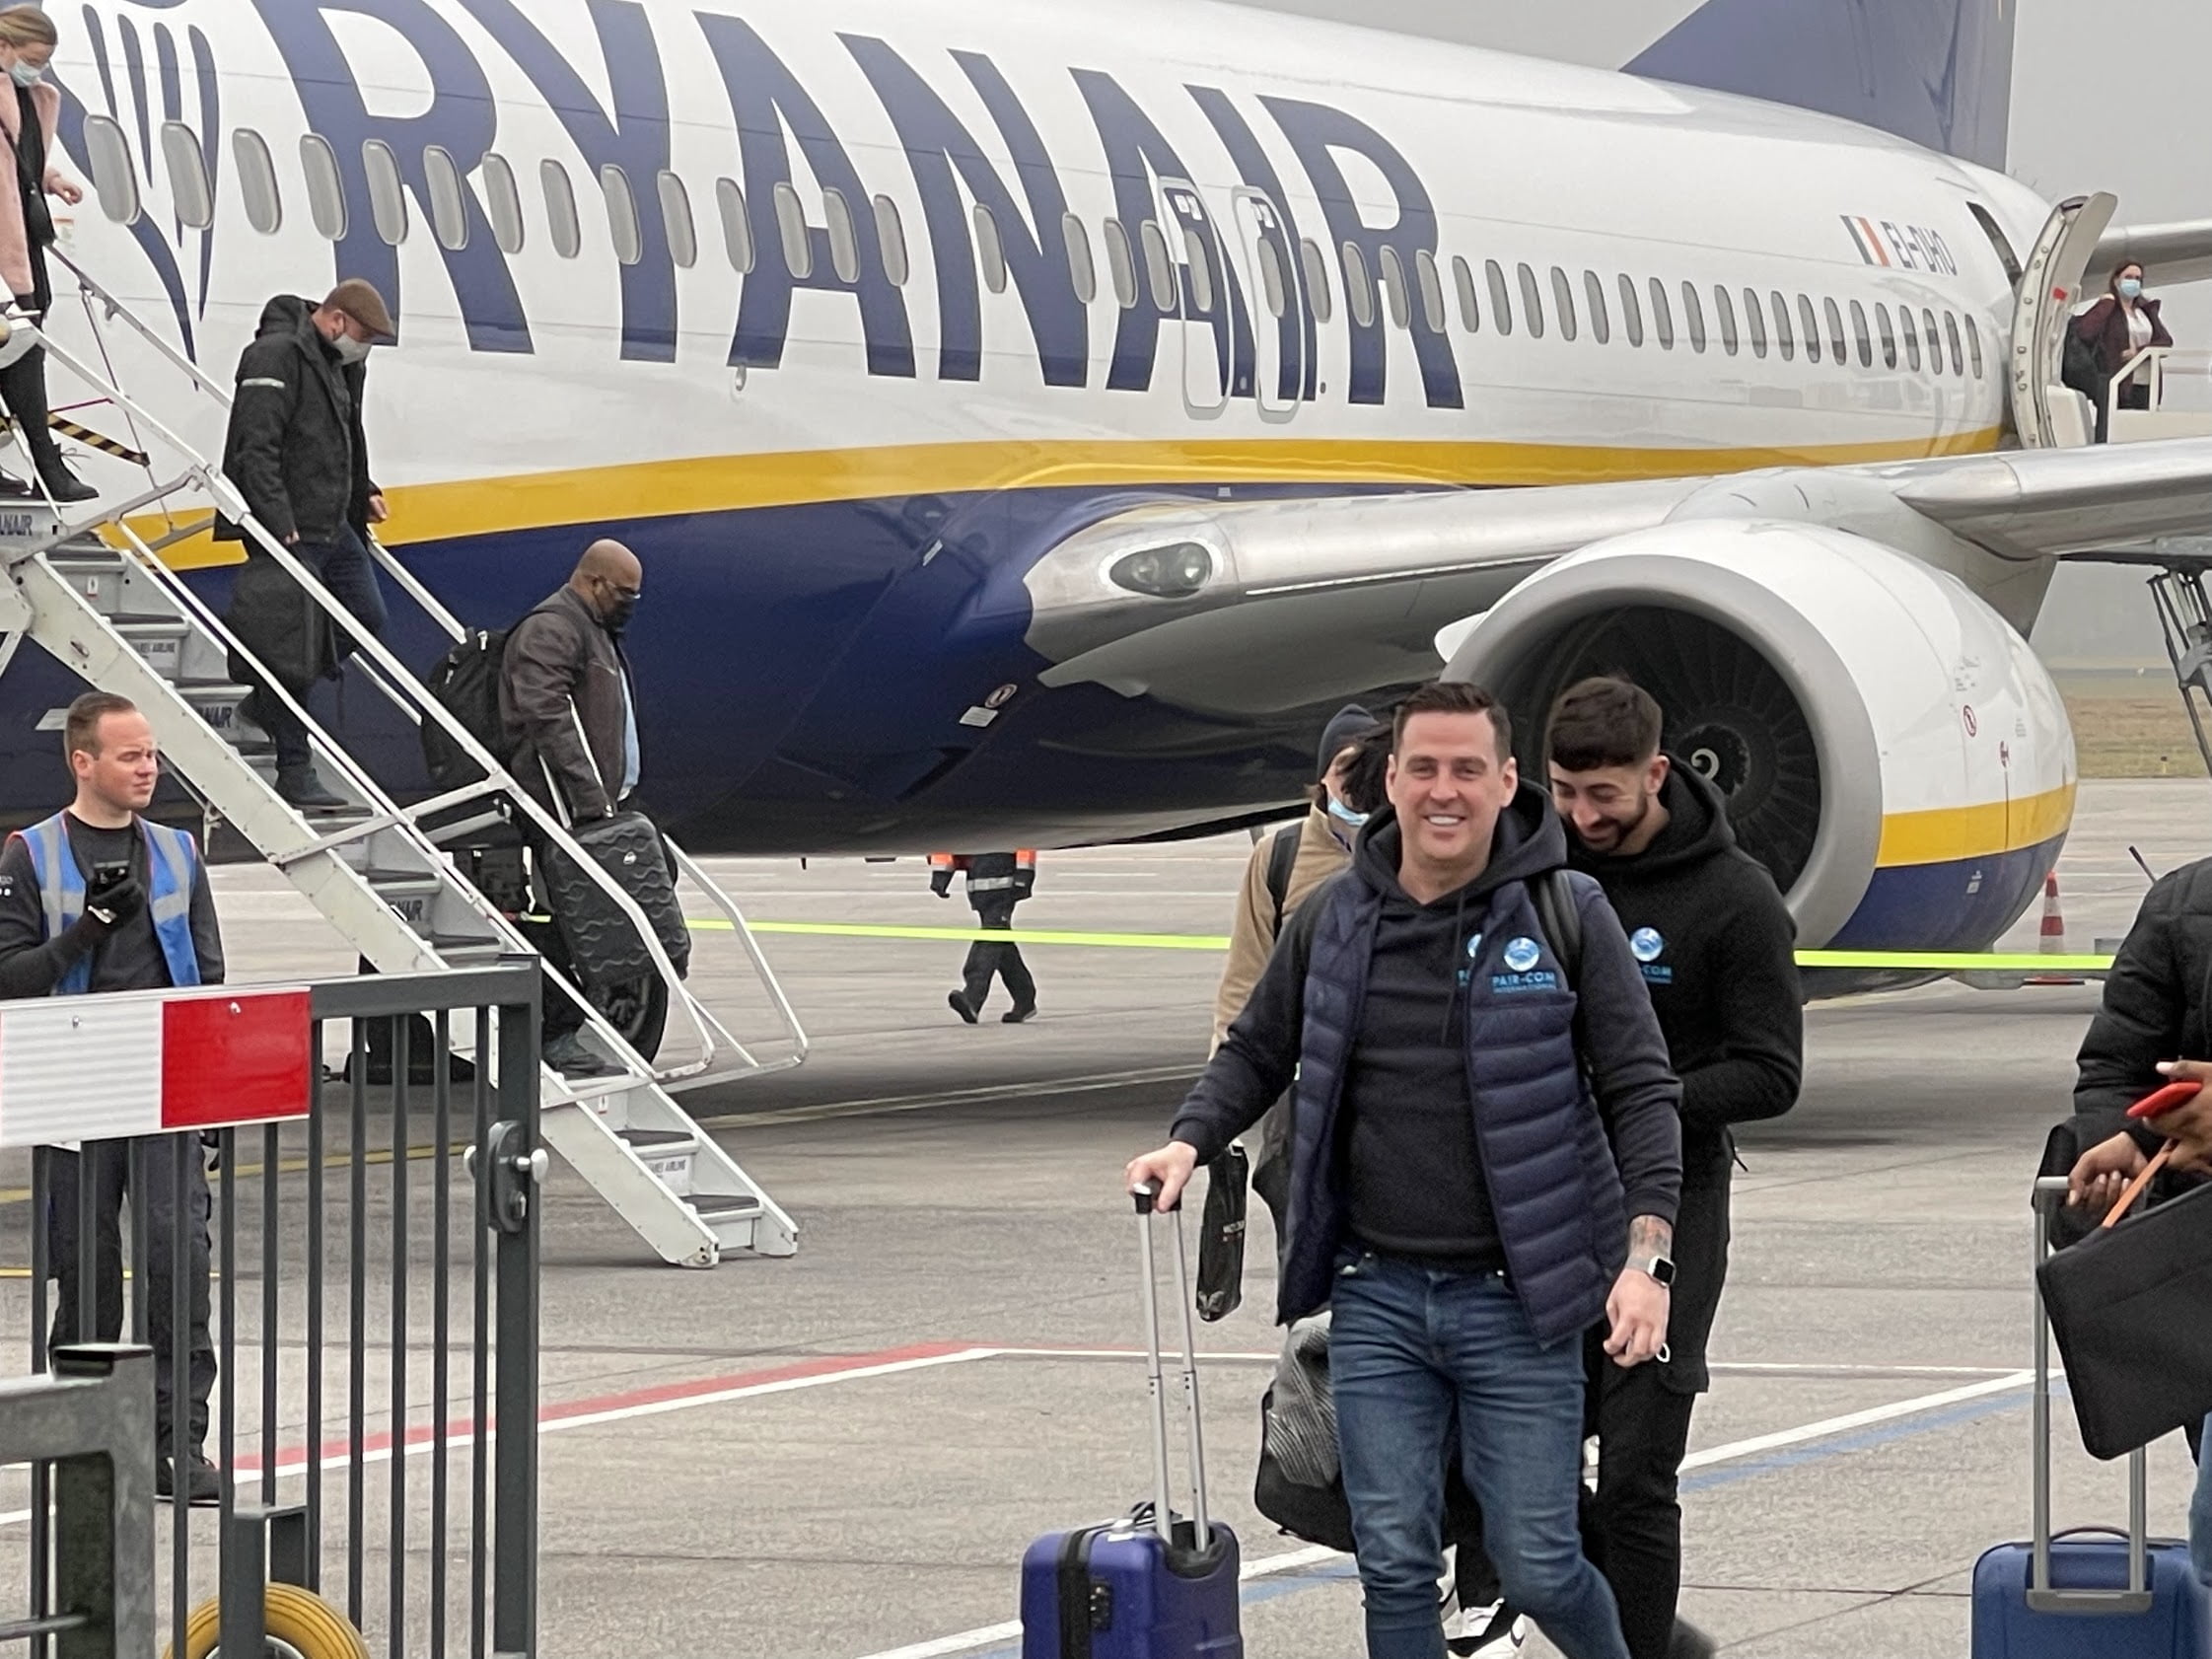 Ryanair enfrenta agências de viagens online após remoção de voo